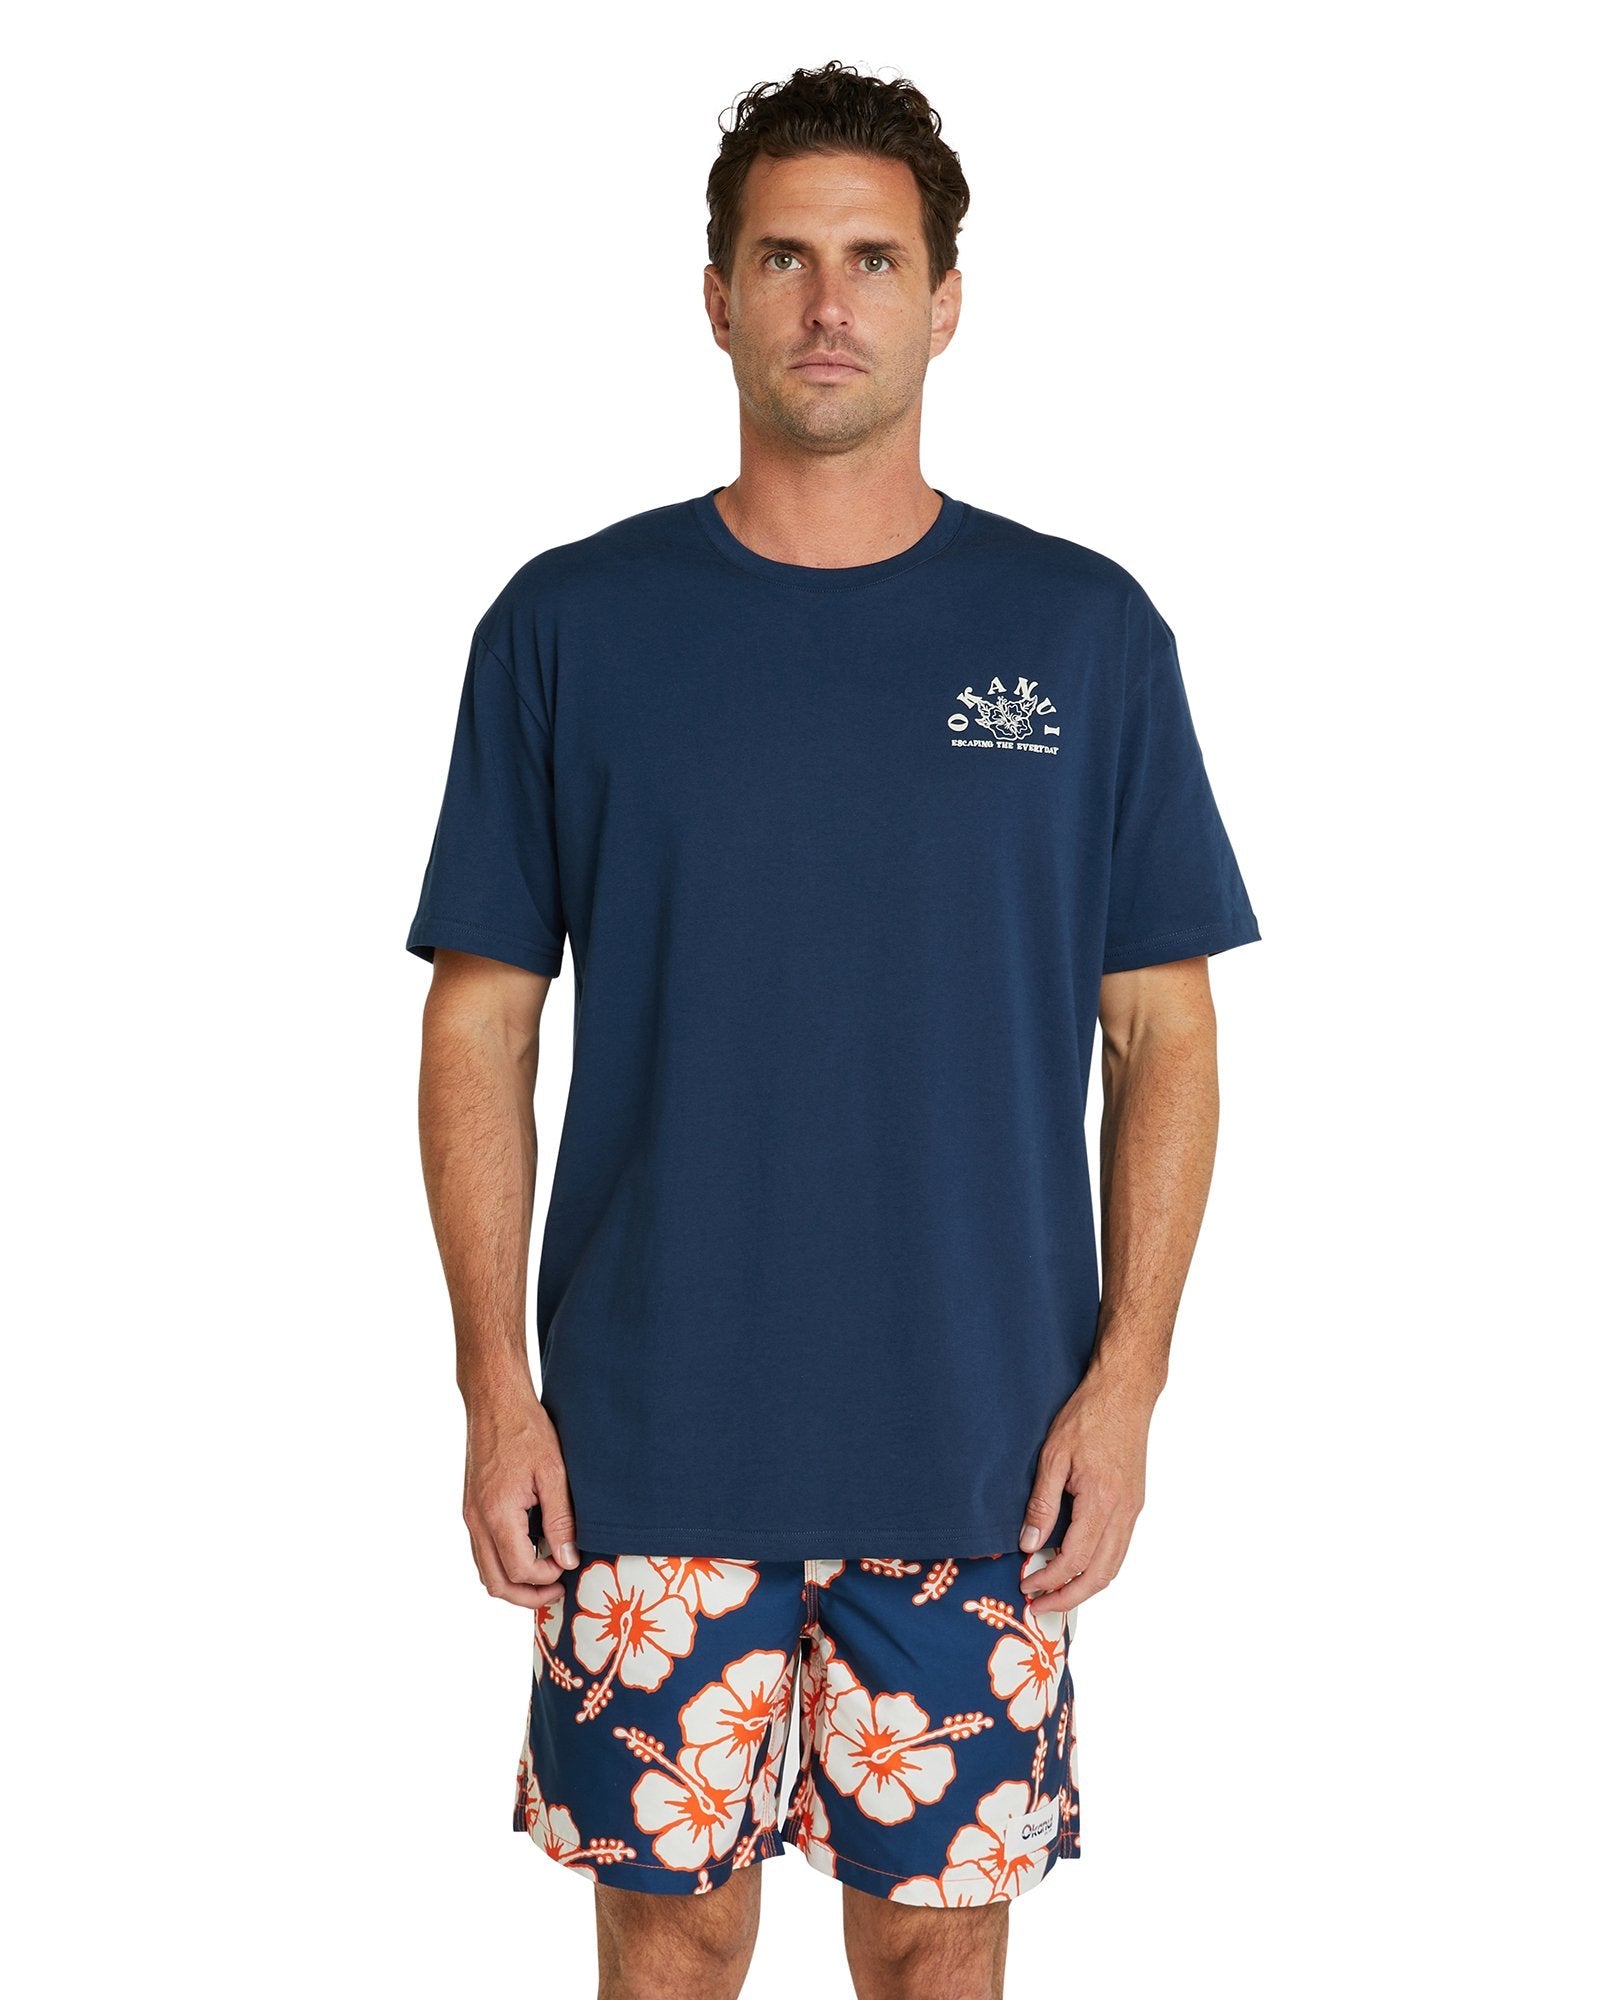 Mens - T-Shirt - Sunrise - Navy